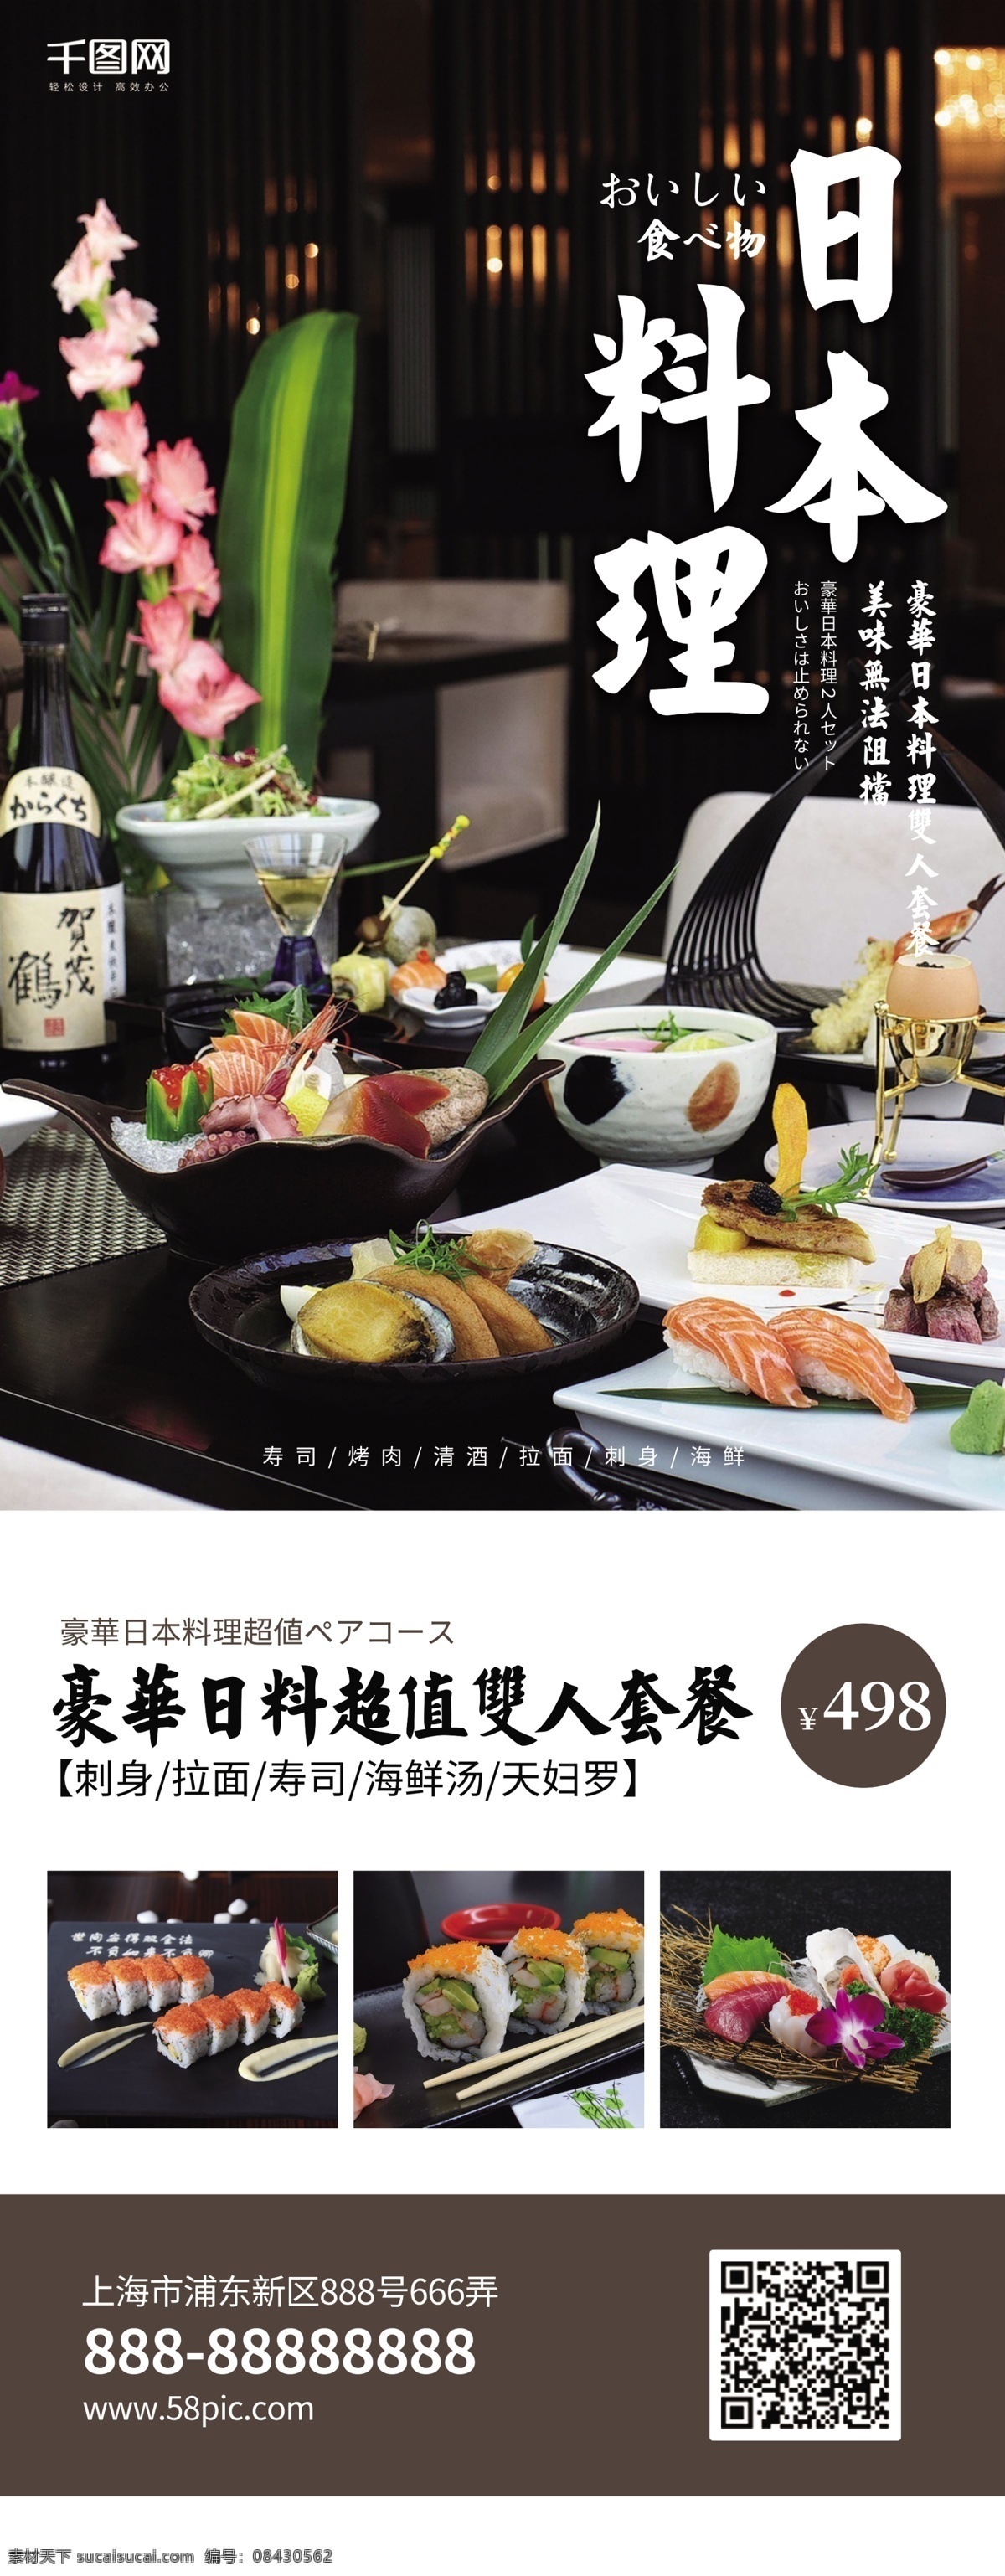 日本料理 寿司 套餐 促销 展架